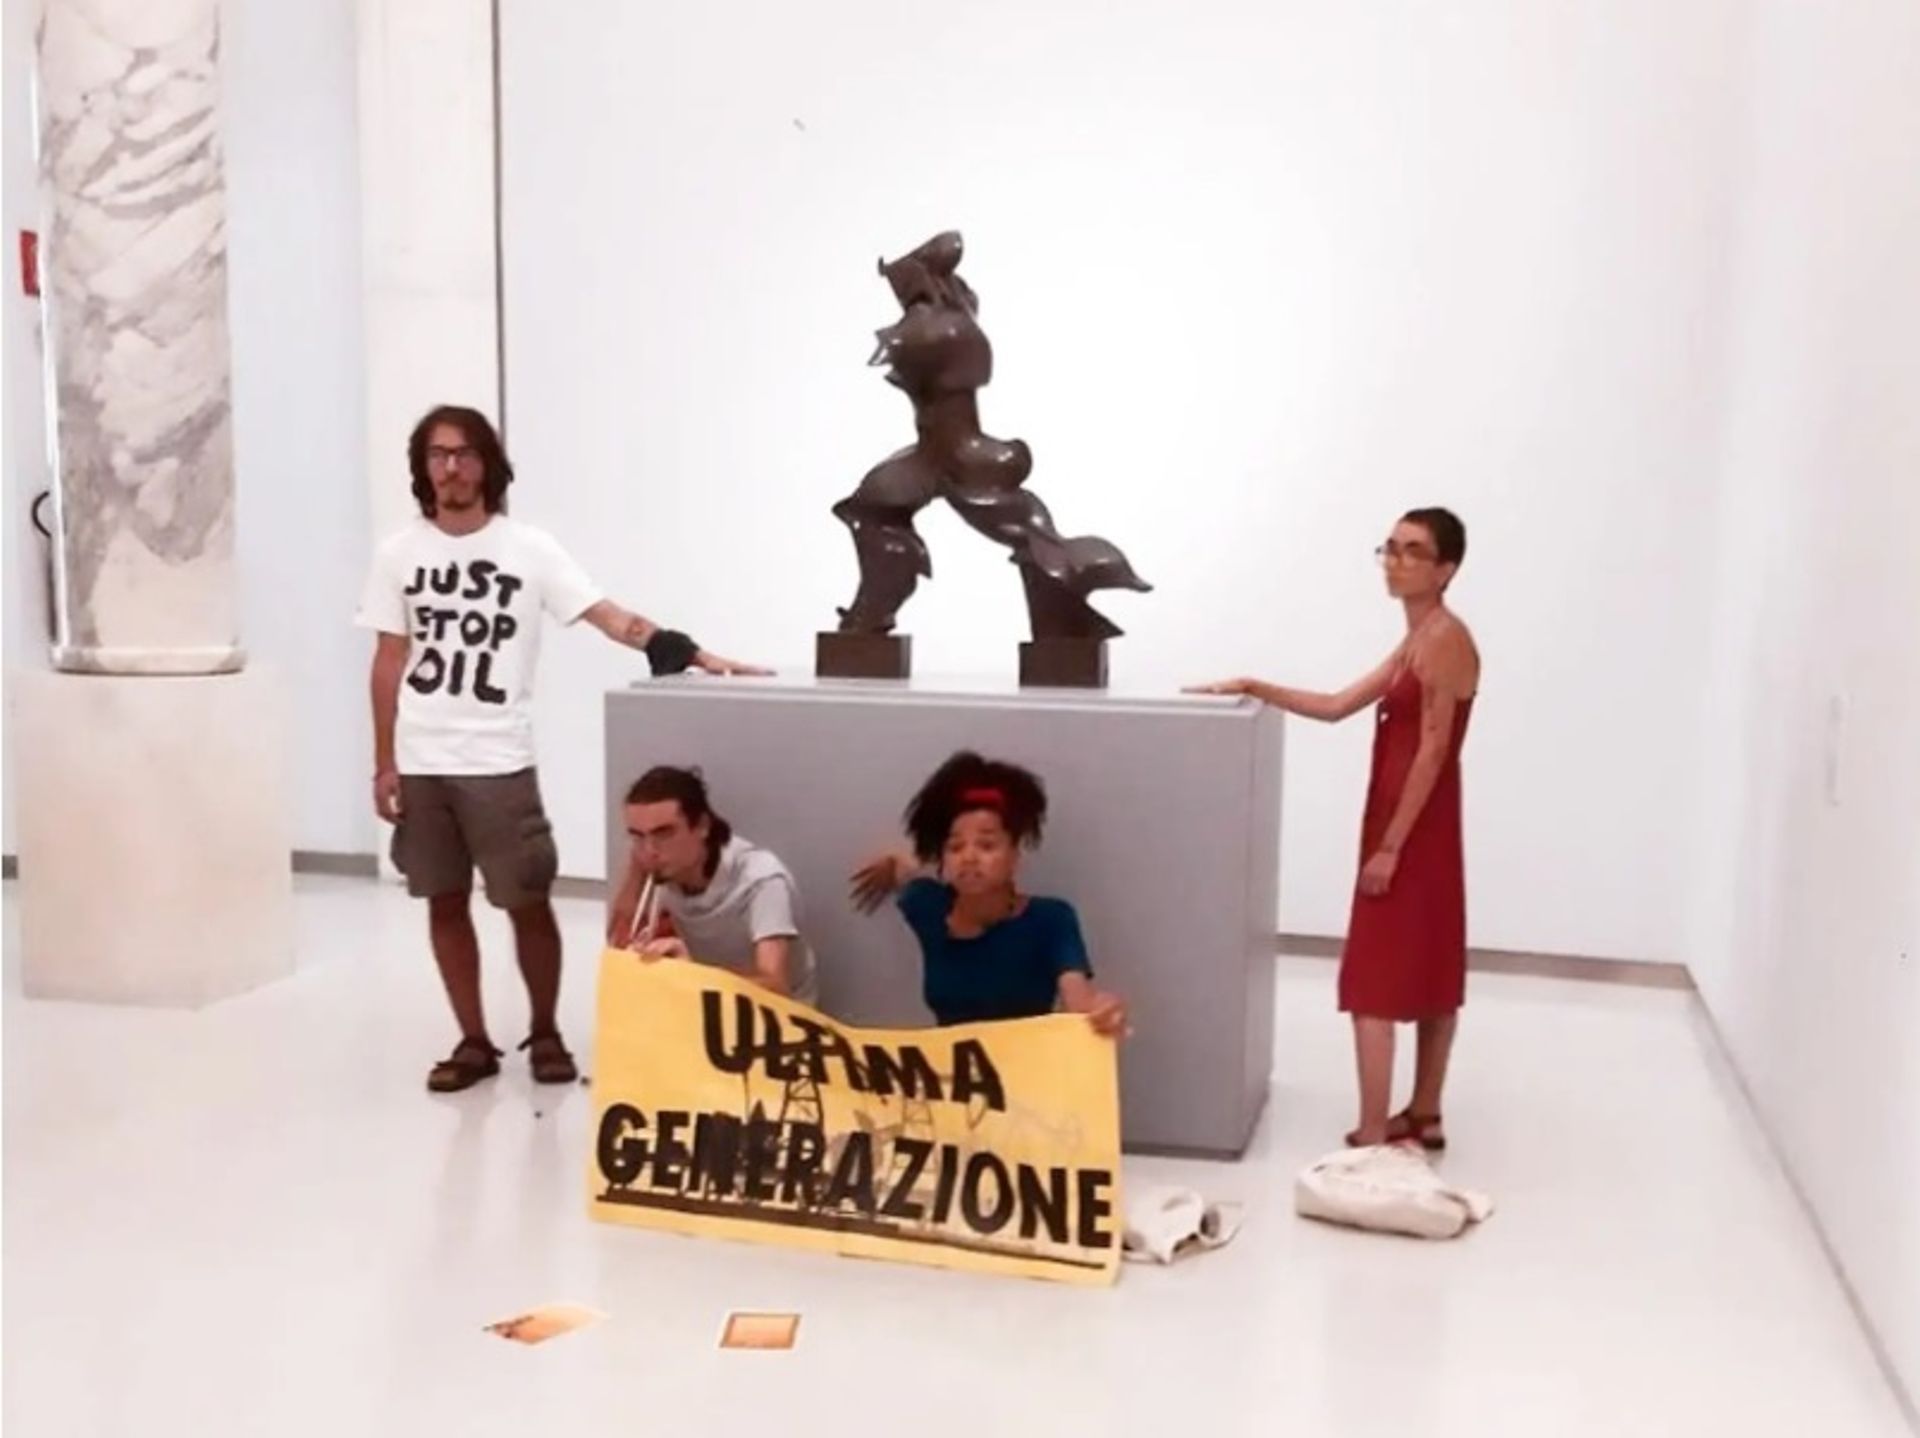 שבוע לאחר הפעולה שלהם בגלריה דגלי אופיצי של פירנצה, Ultima Generazione חוזרים לפעילות נוספת במוזיאון דל נובצ'נטו במילאנו